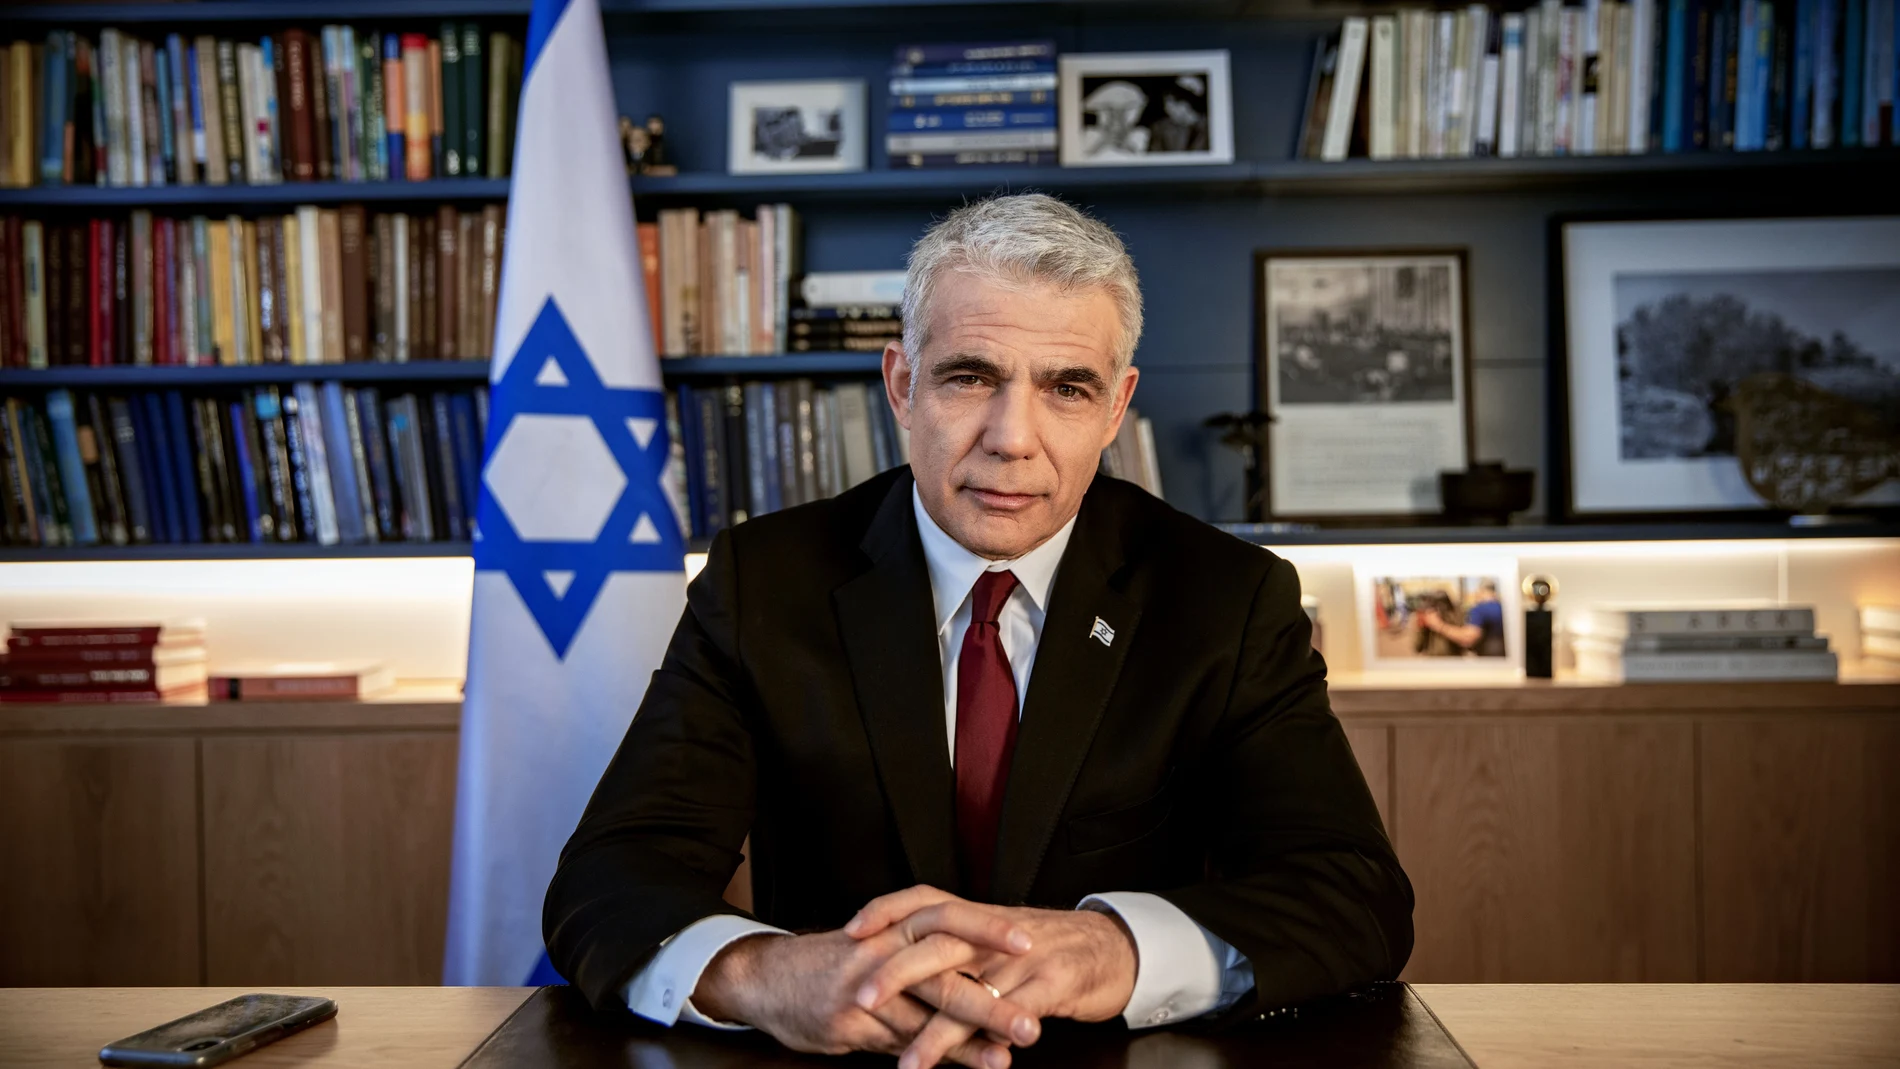 El presidente Rivlin convocó en la residencia oficial al centrista Yair Lapid (Yesh Atid), que quedó en segundo lugar en las elecciones